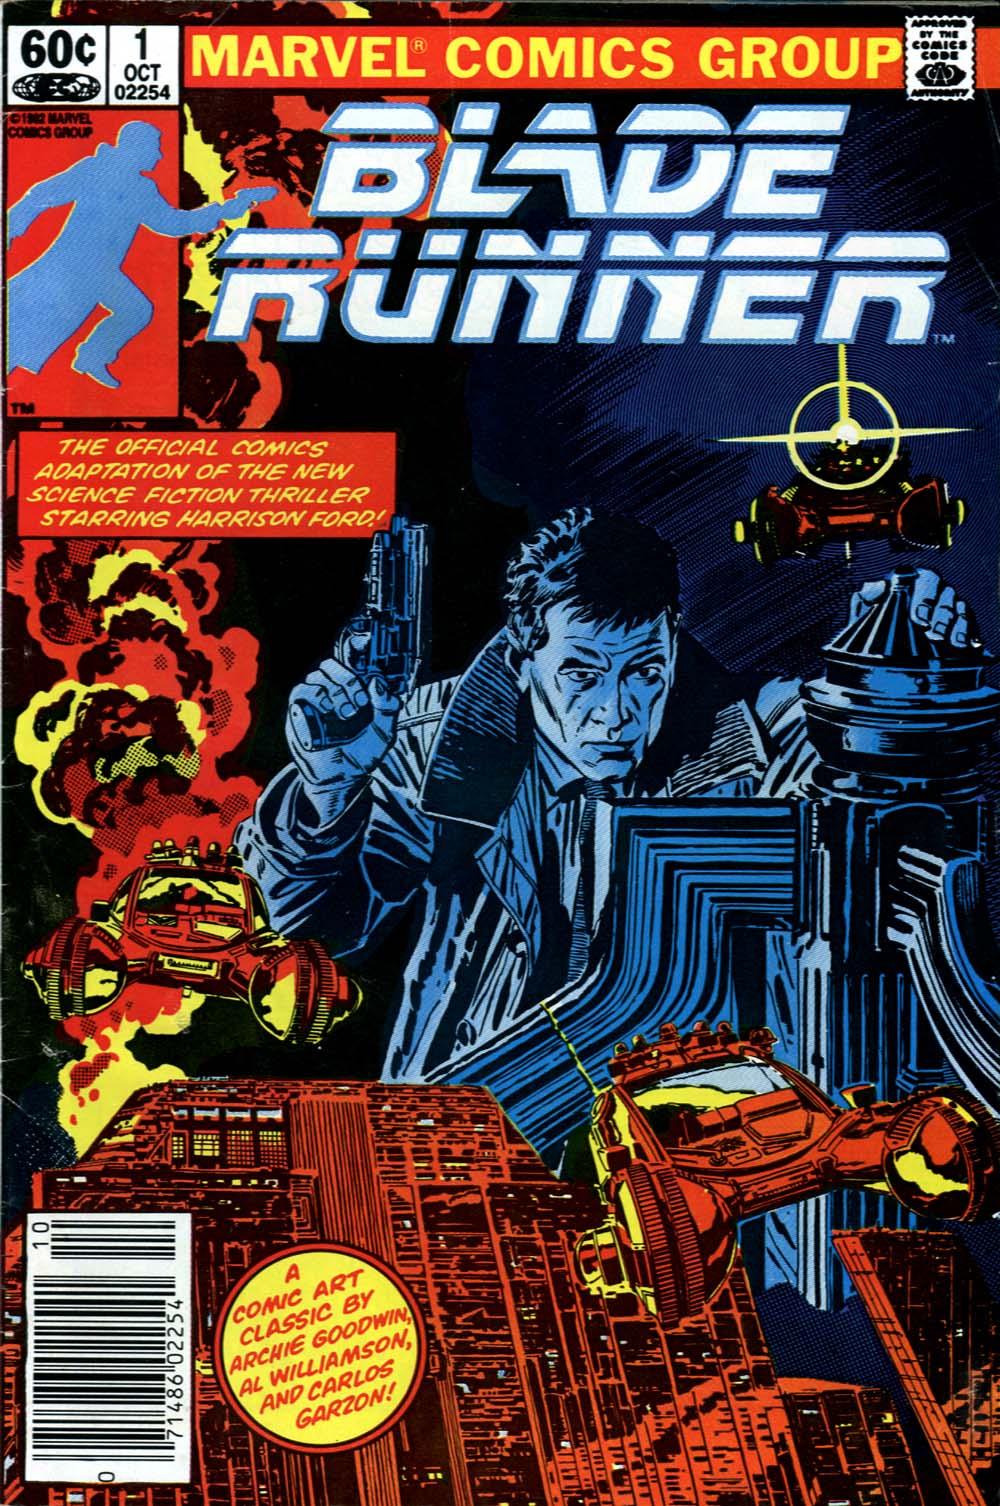 Blade Runner Vol. 1 #1